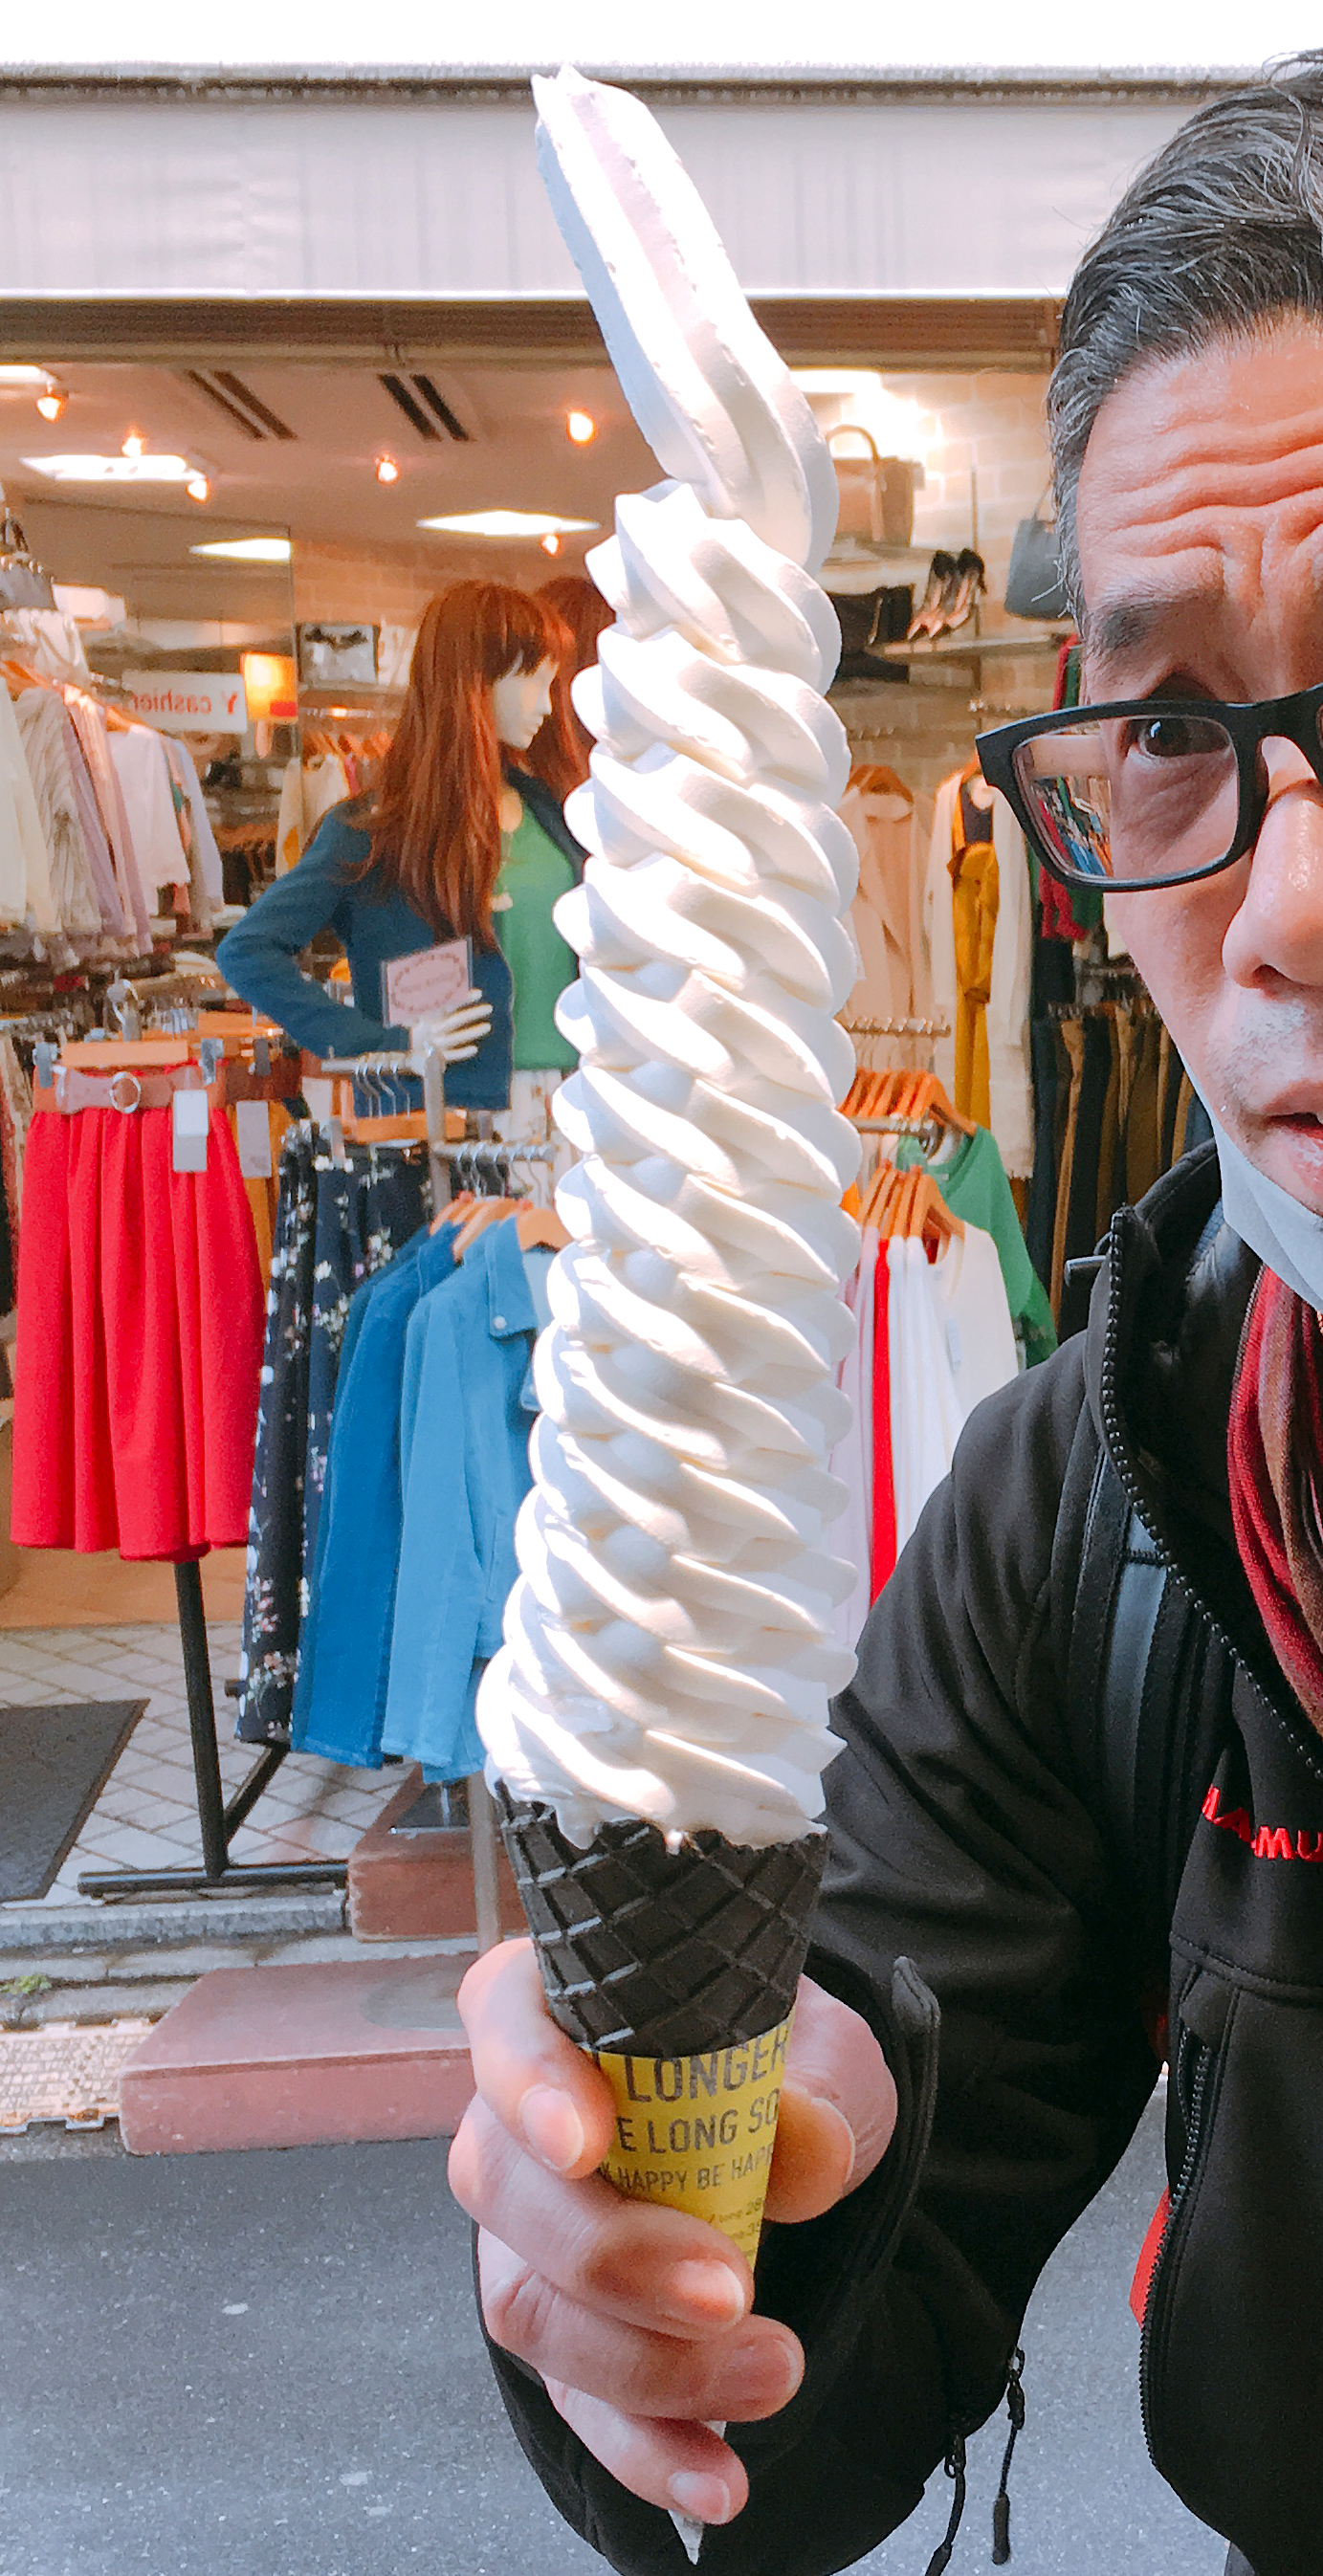 インスタ女子注目 日本一長いソフトクリームを提供するお店が東京 原宿にオープン マジでなげぇえええええええええッ ロケットニュース24